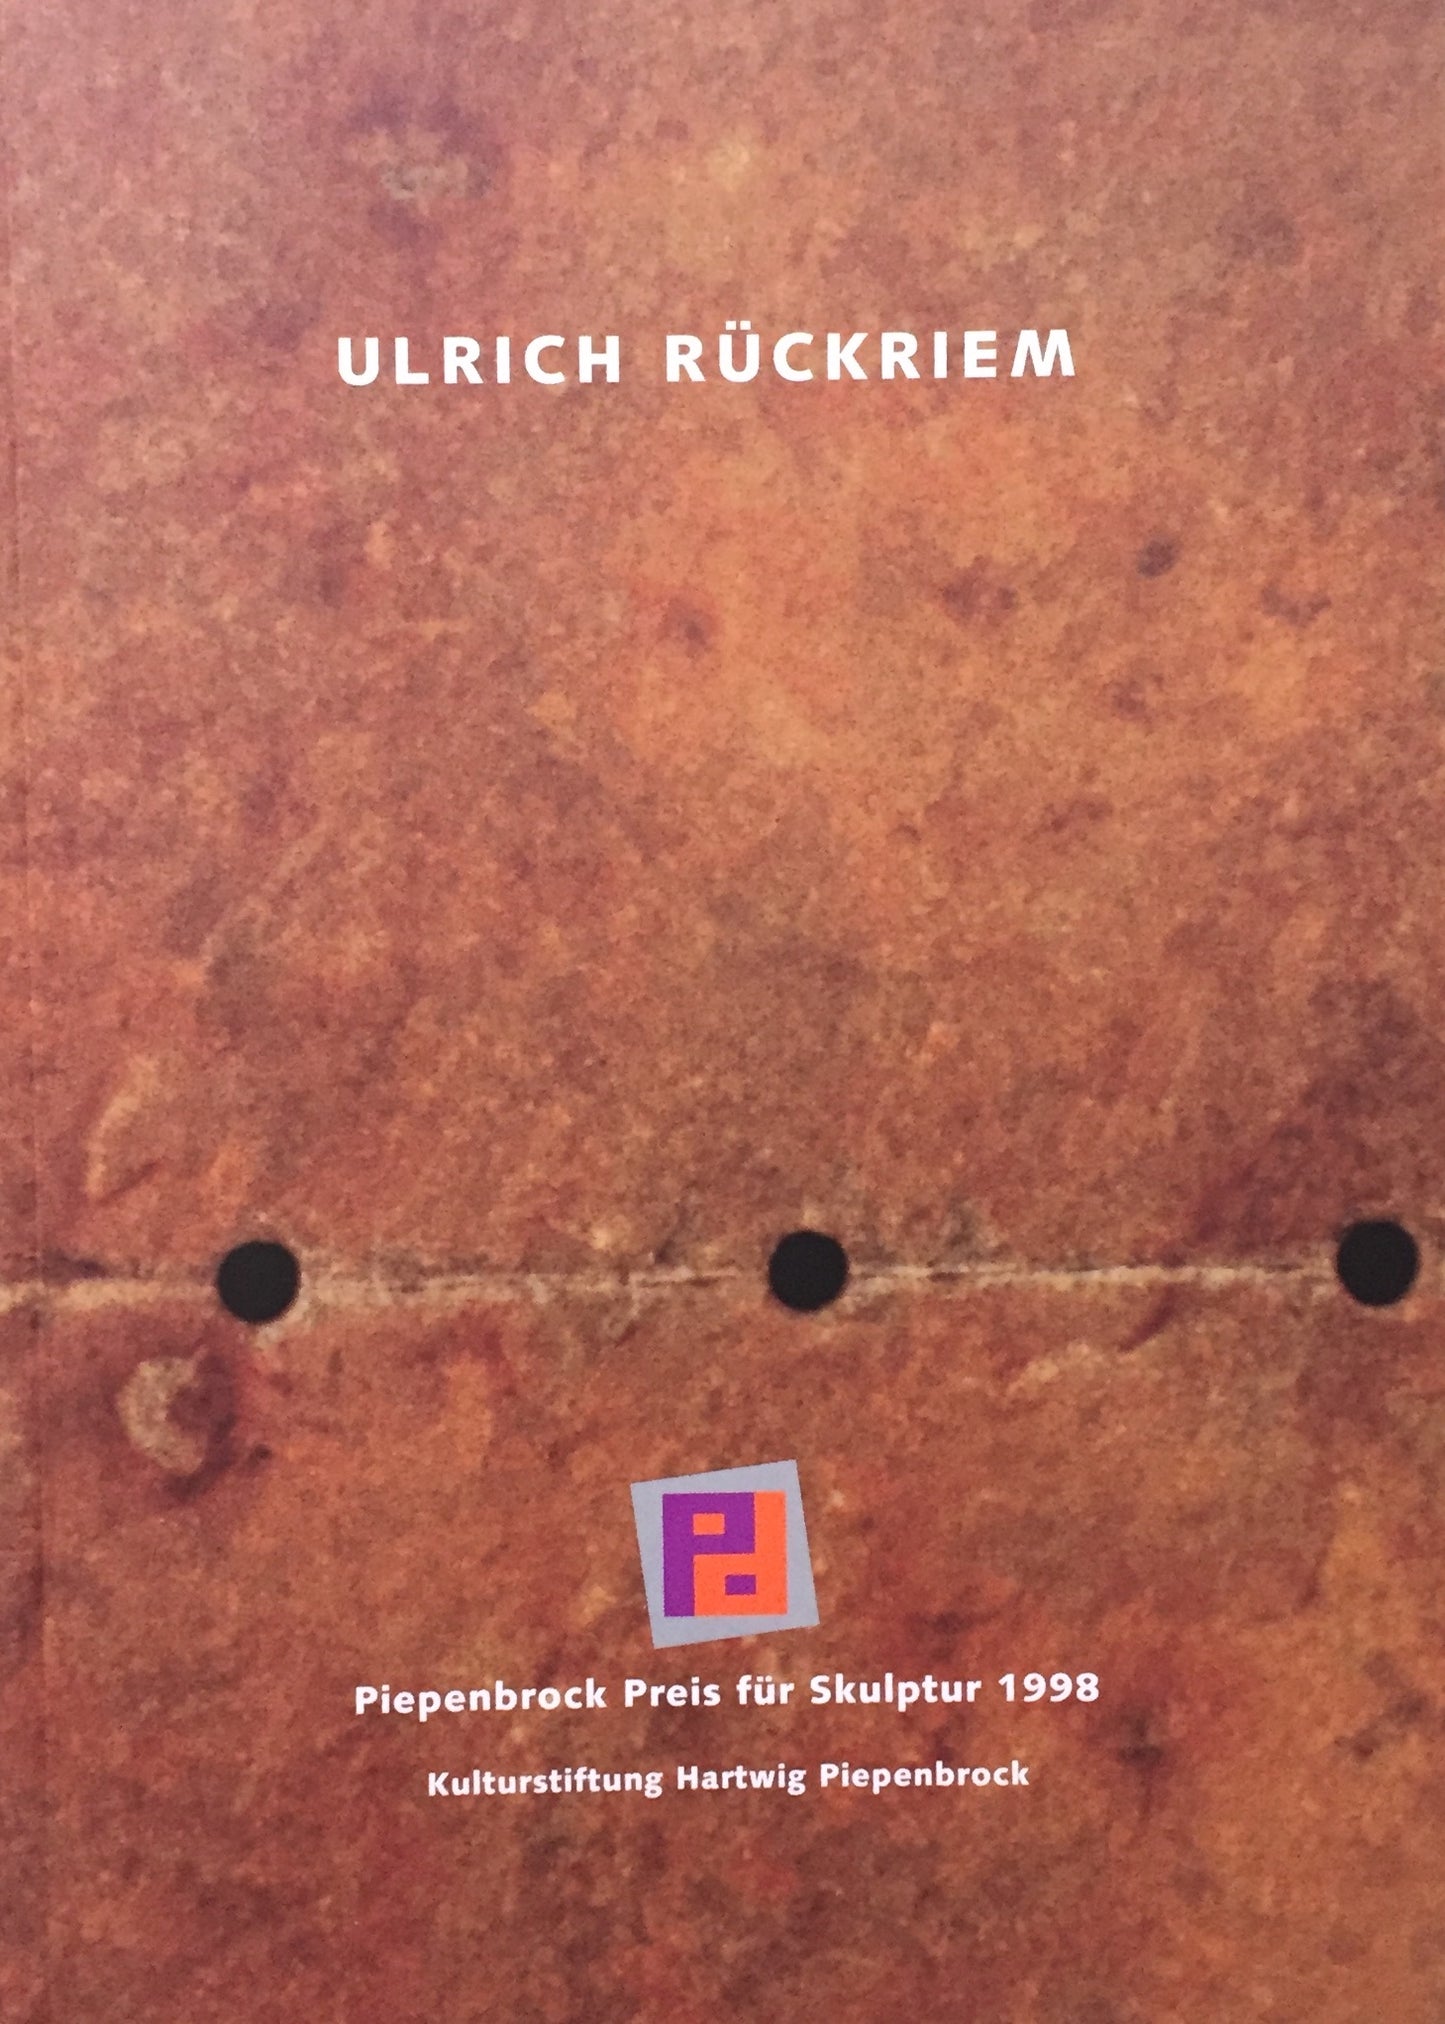  Ulrich Rückriem　 Piepenbrock Preis für Skulptur　ウルリッヒ・リュックリーム 